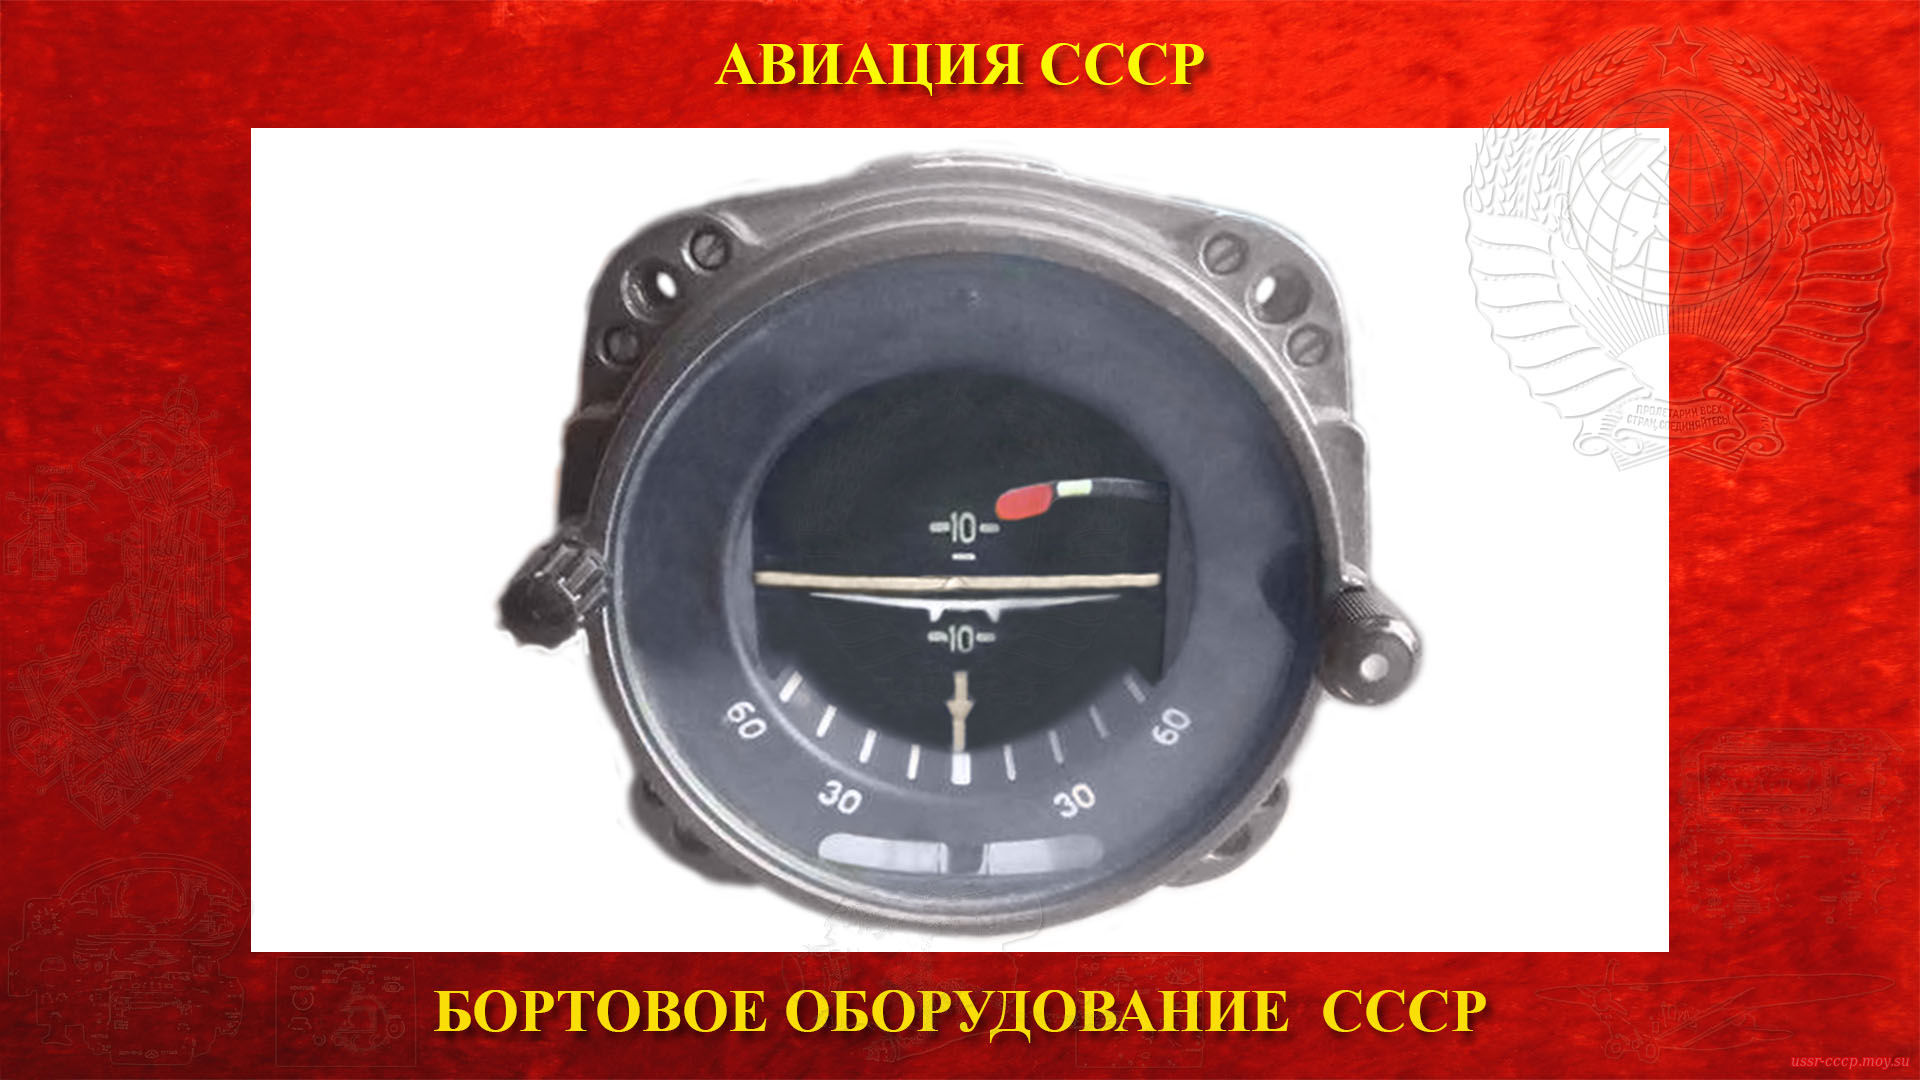 АГБ-2 — Авиагоризонт — Гироскопический прибор СССР